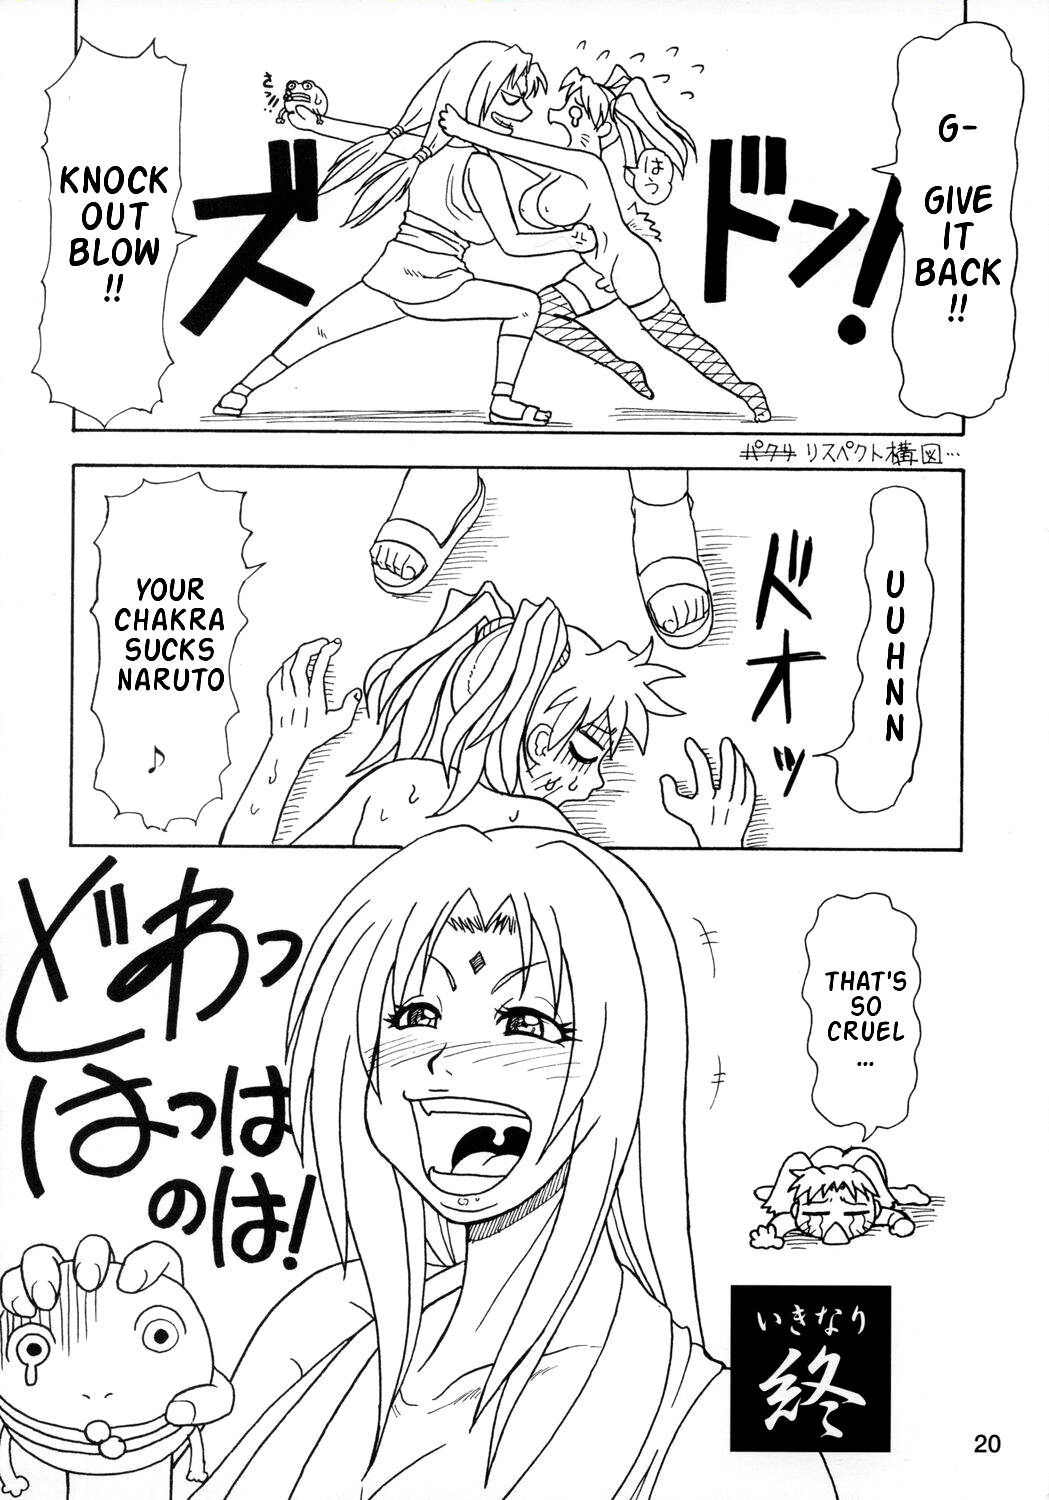 Kunoichi Style Max Speed naruto 20 hentai manga